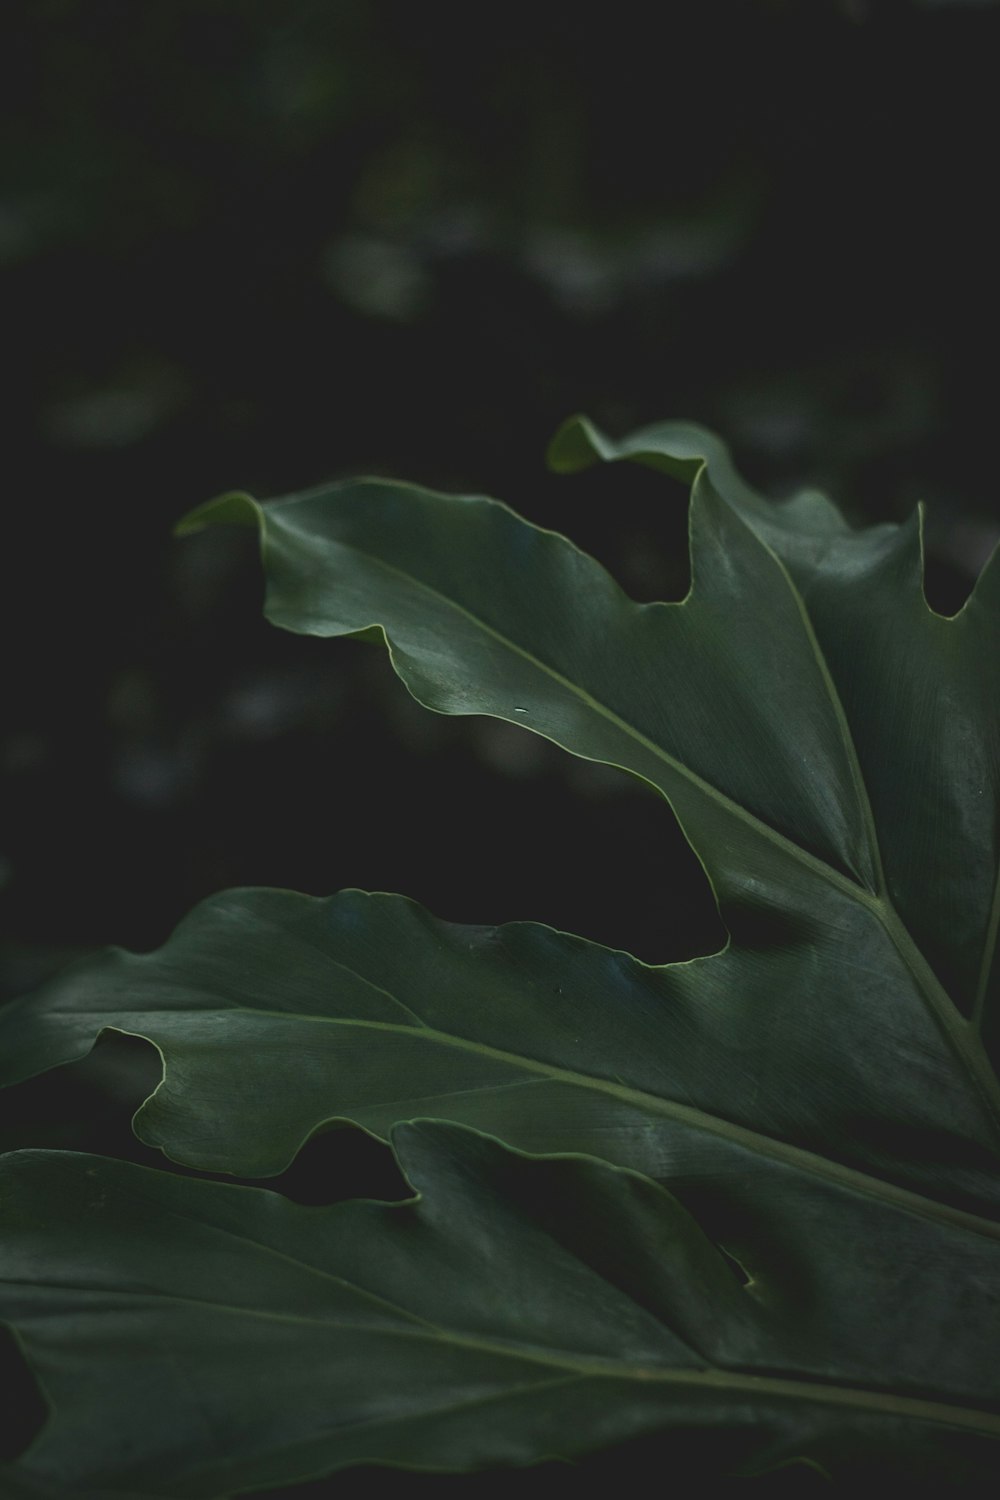 Fotografia a fuoco selettiva di una pianta a foglia verde